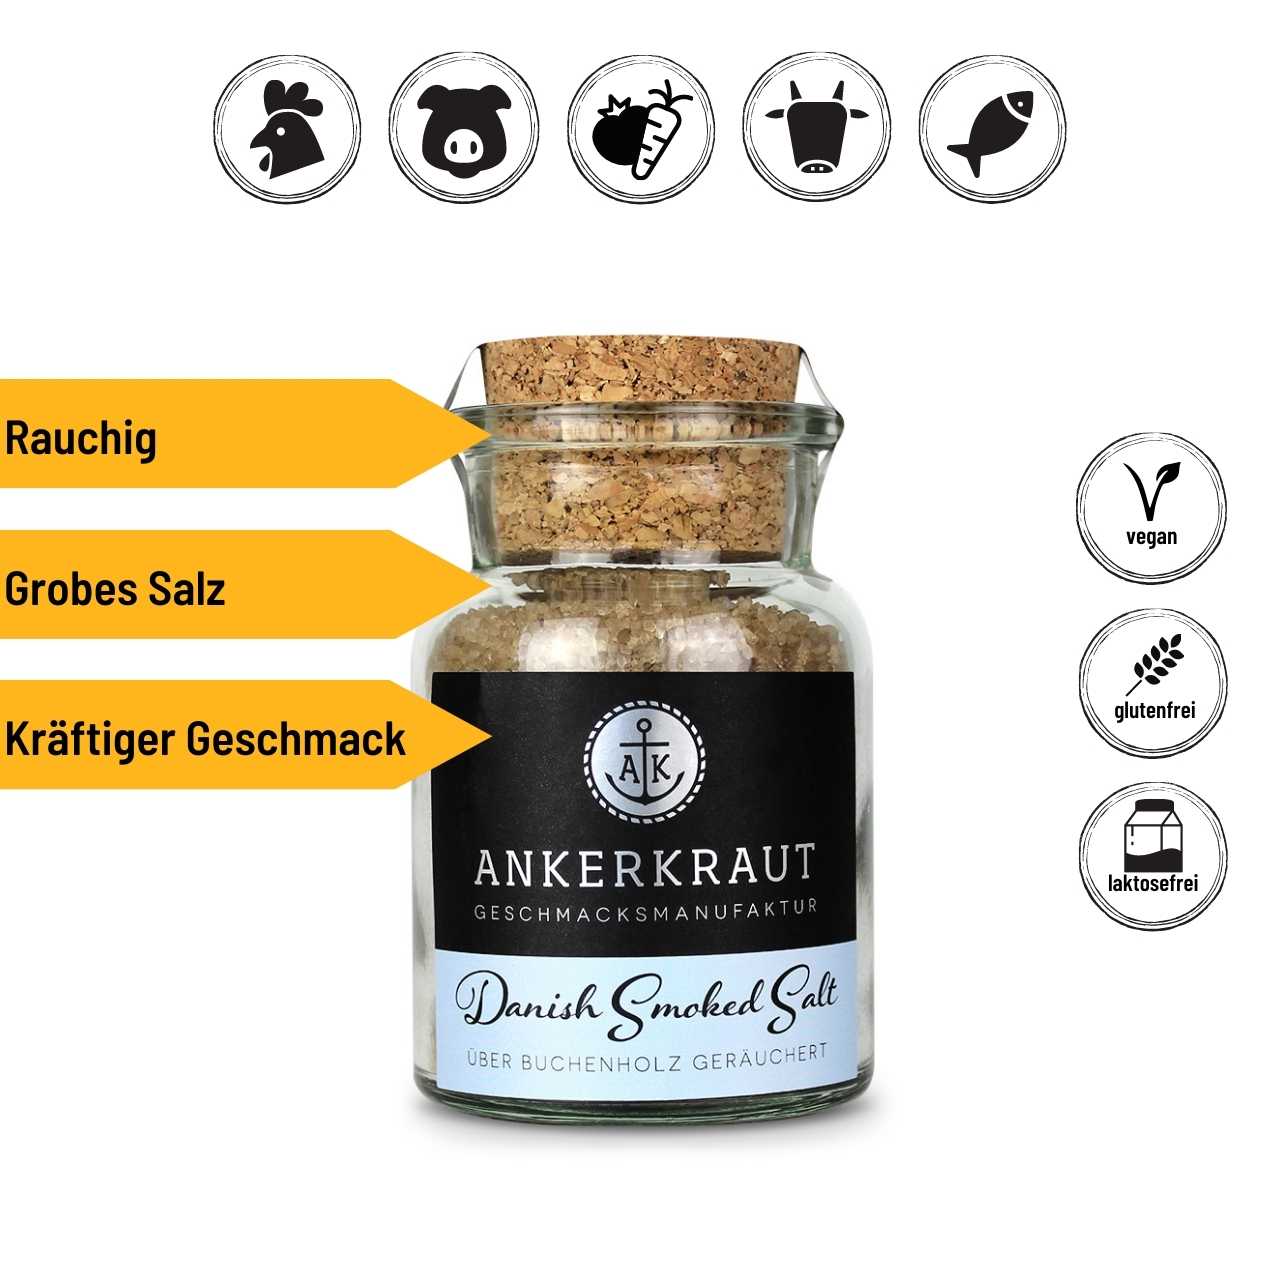 Ankerkraut Danish Smoked Salt